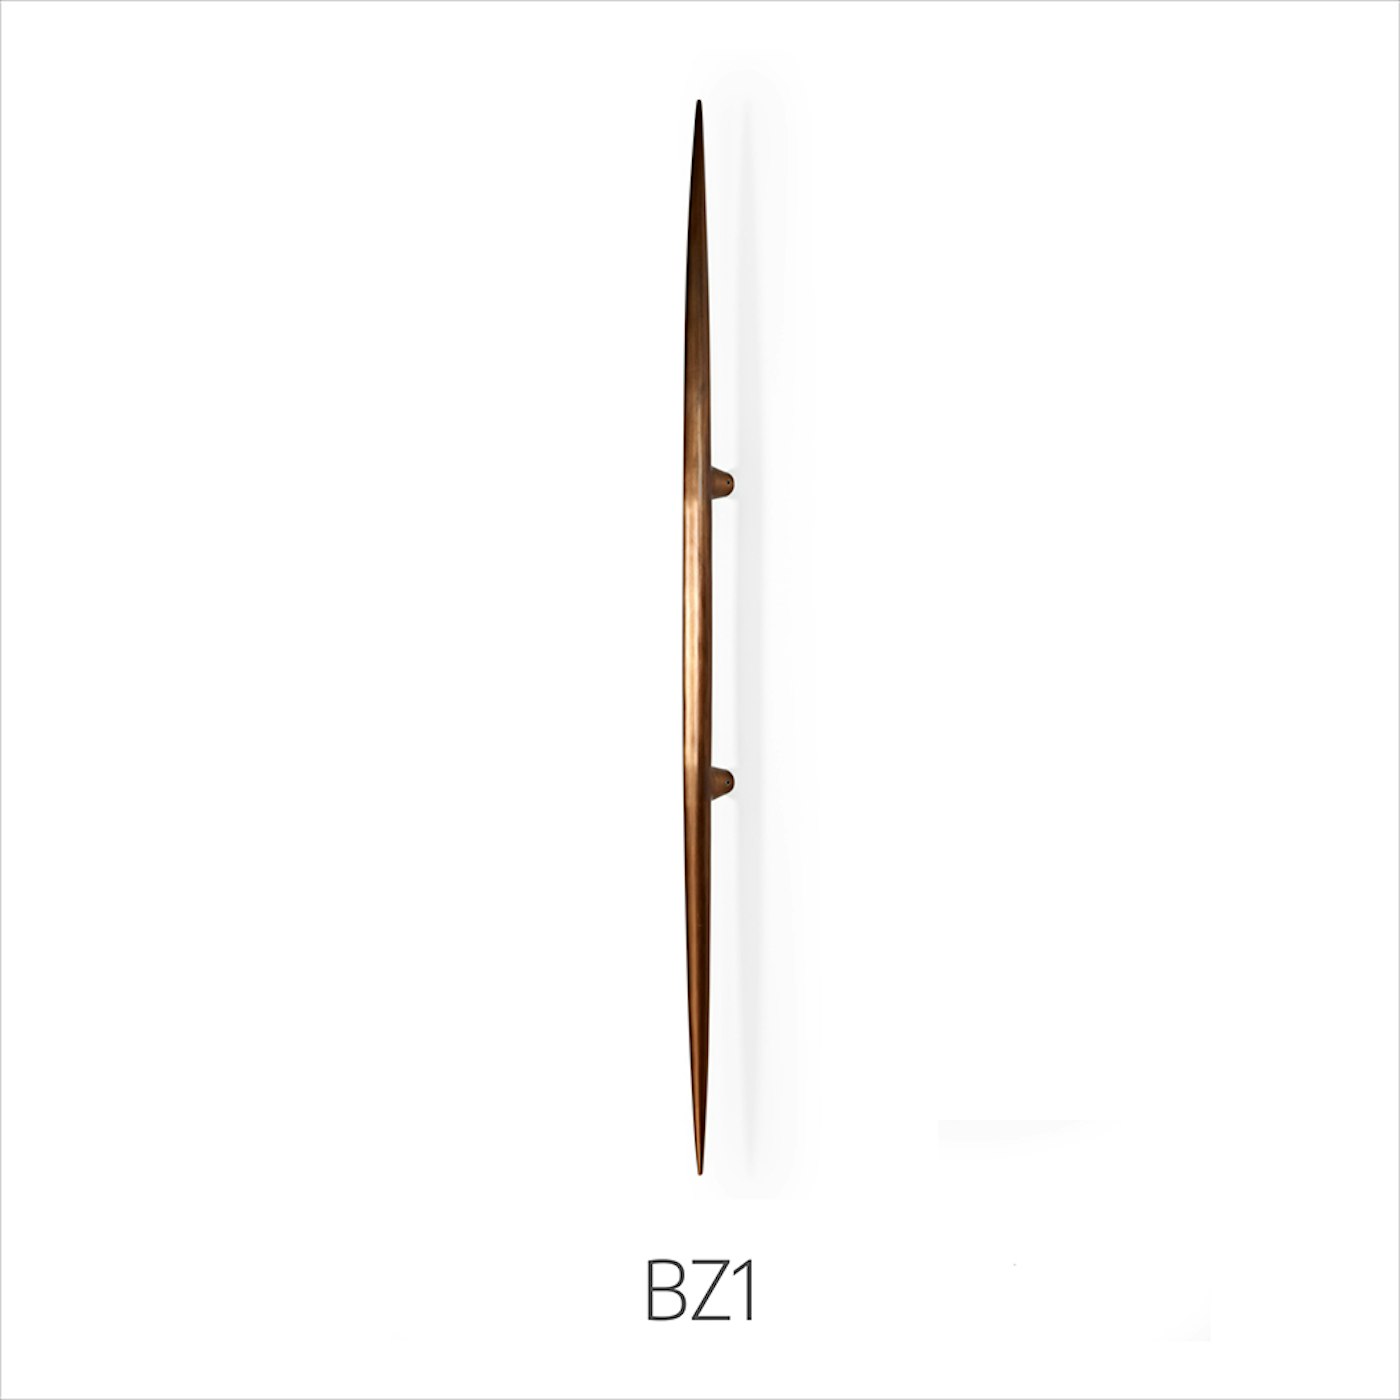 bronze handles bz1